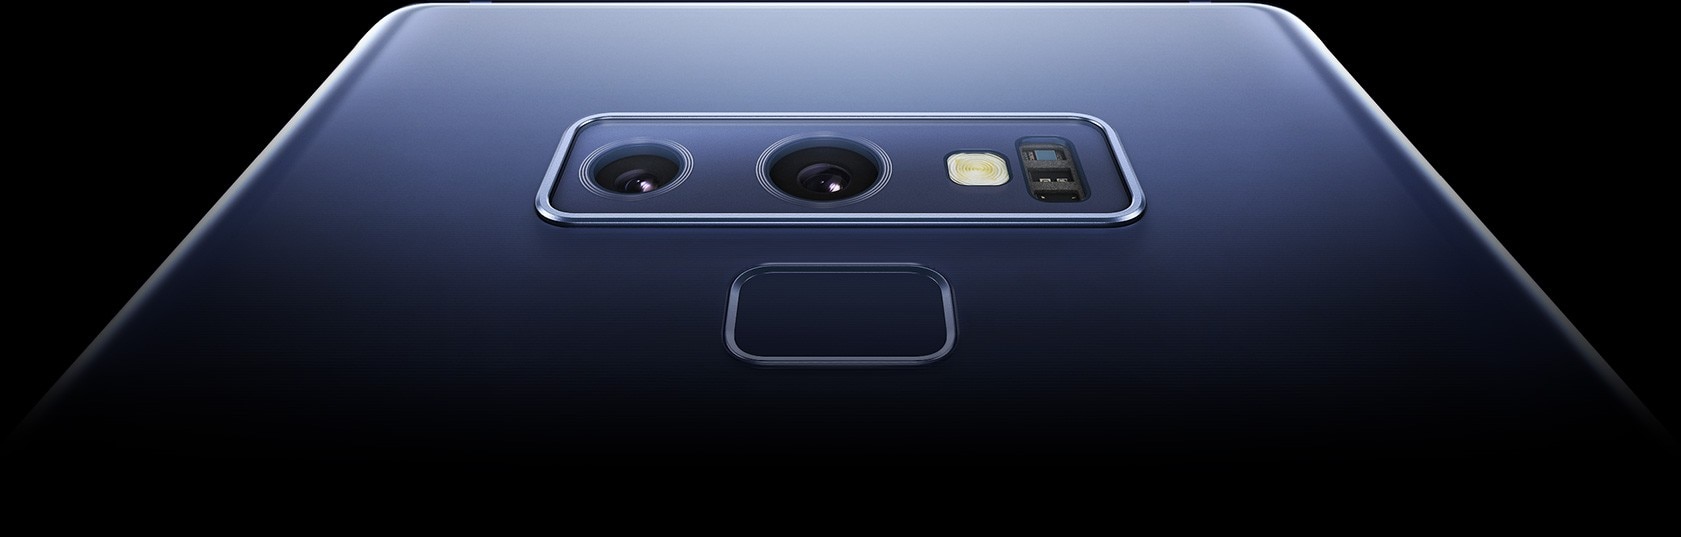 Un gros plan extrême de la caméra arrière et du lecteur d'empreintes digitales à double objectif du Galaxy Note9